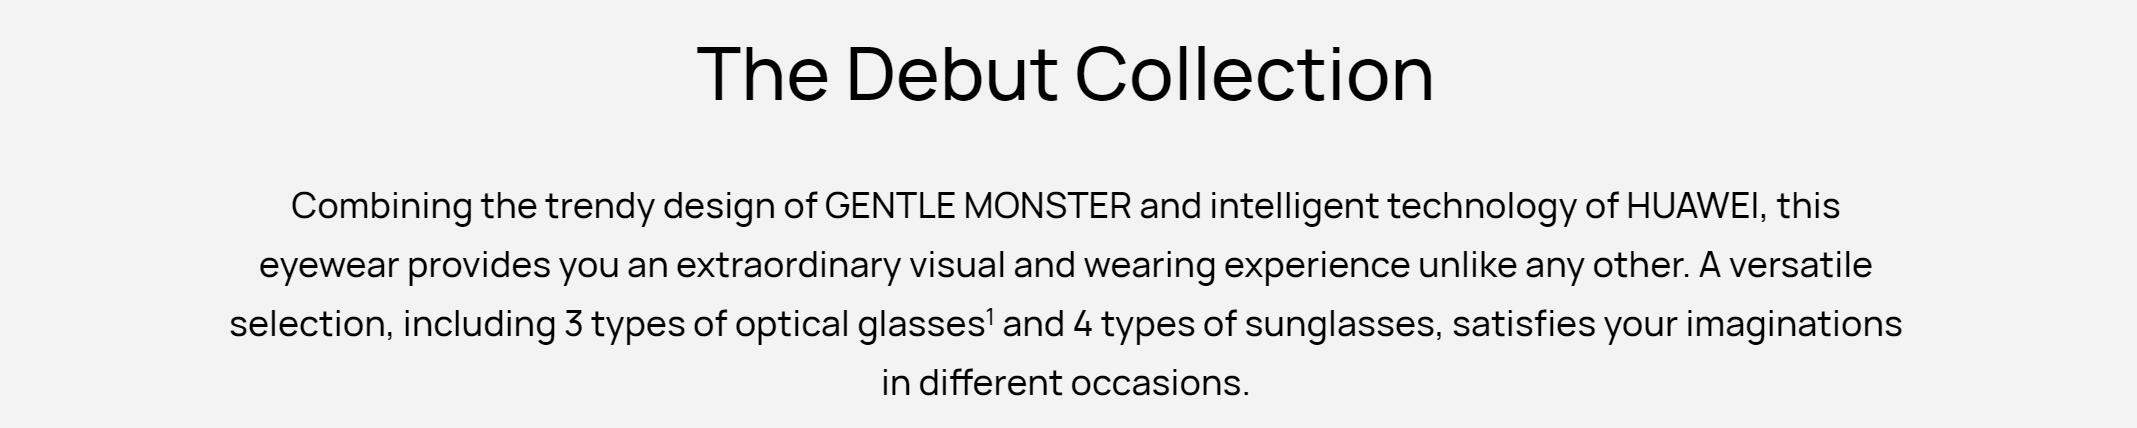 gentle-monster-eyewear-03.jpg